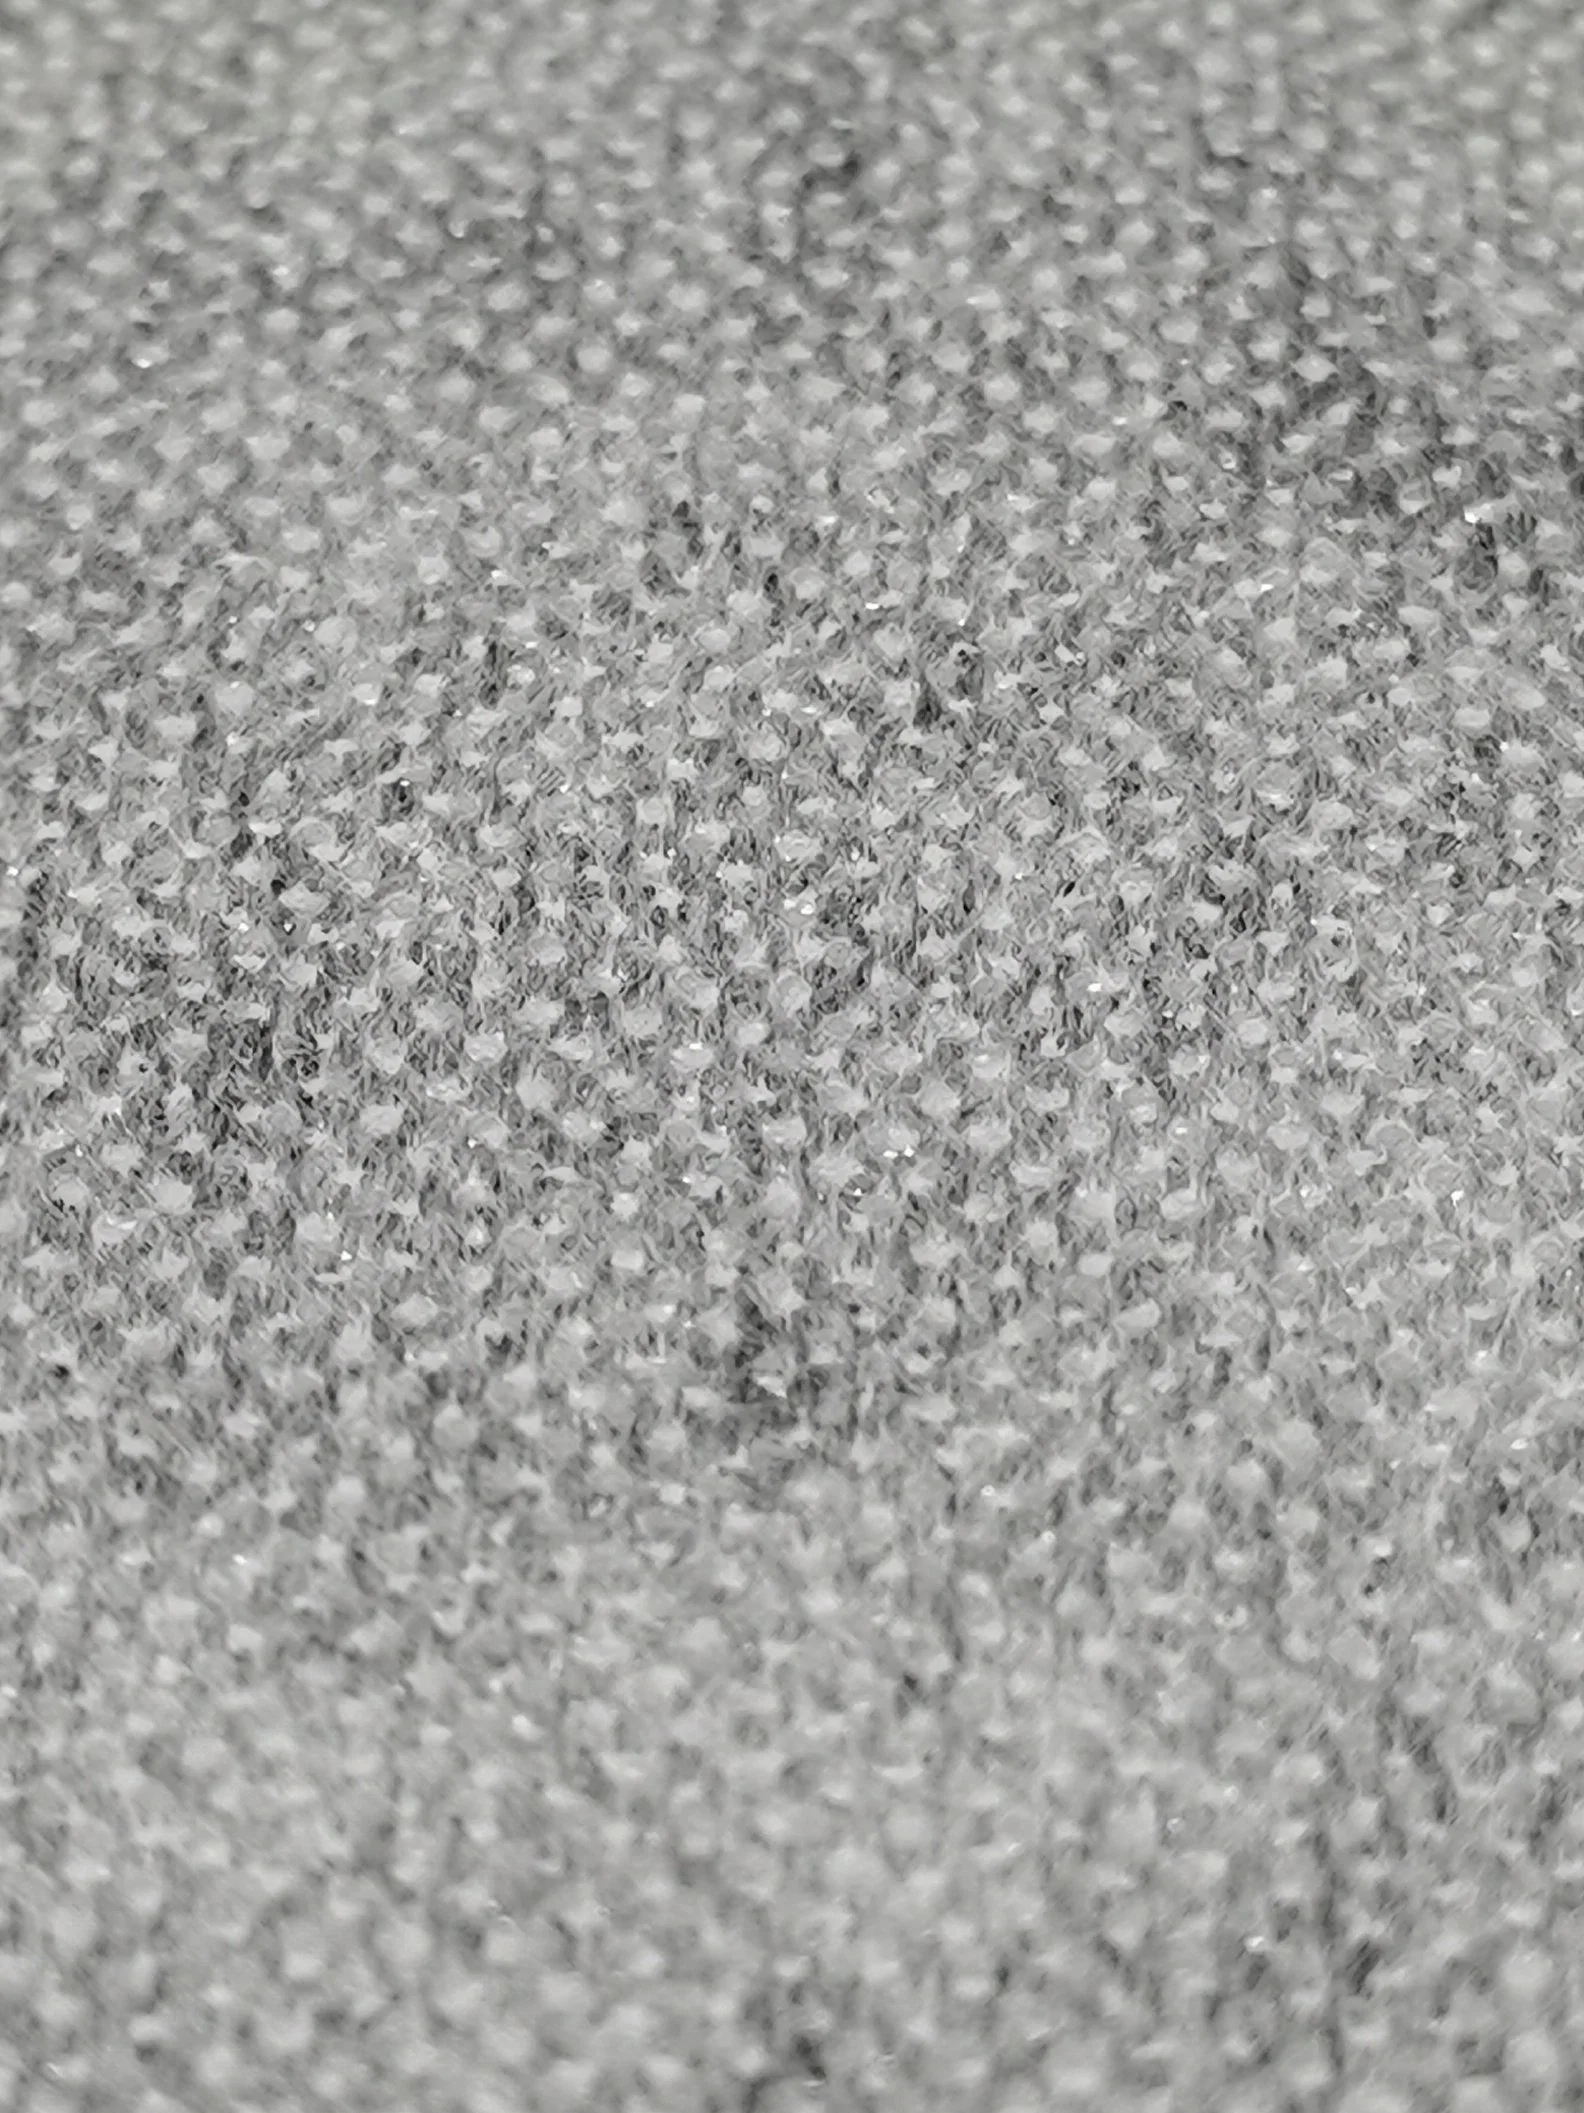 Nylon et polyester mélangés, entoilage thermocollant non tissé par liaison thermique.